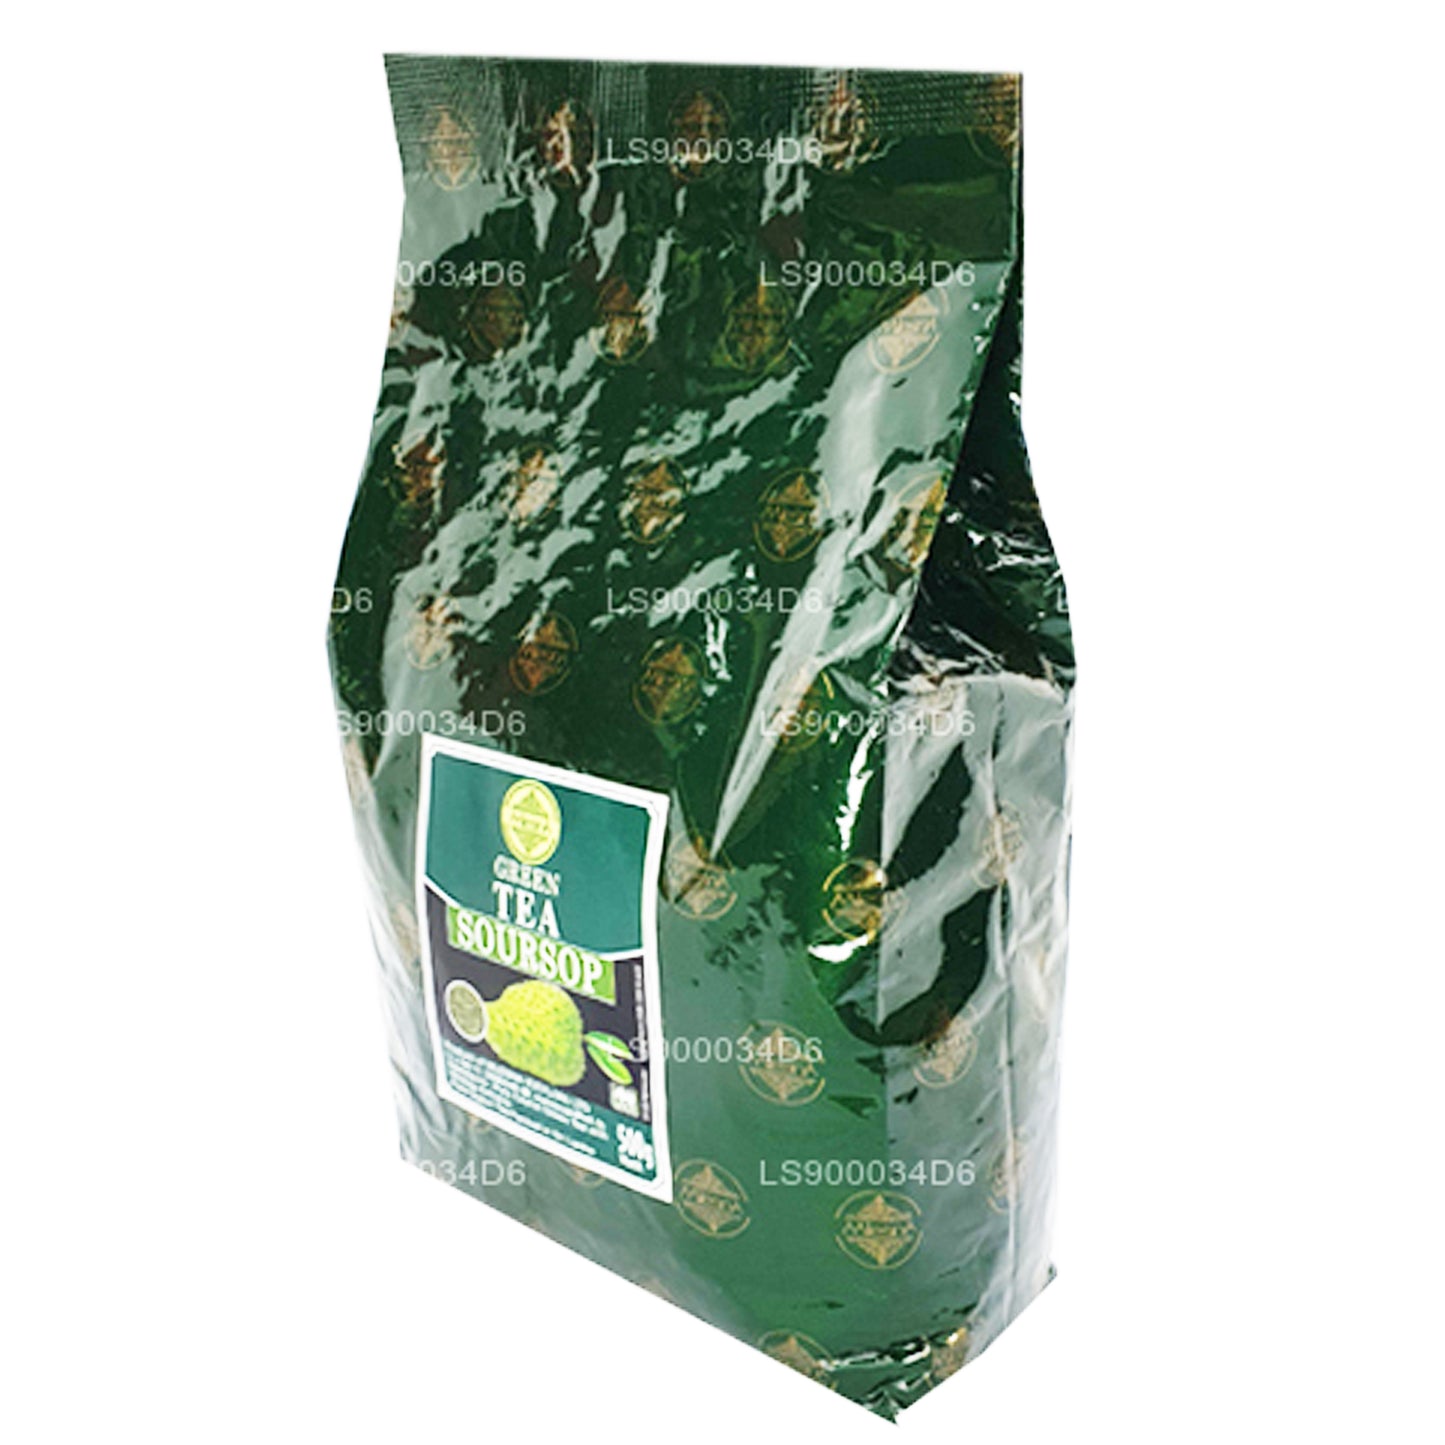 Mlesna naturlig aromatiseret soursop Ceylon grøn te (500 g)